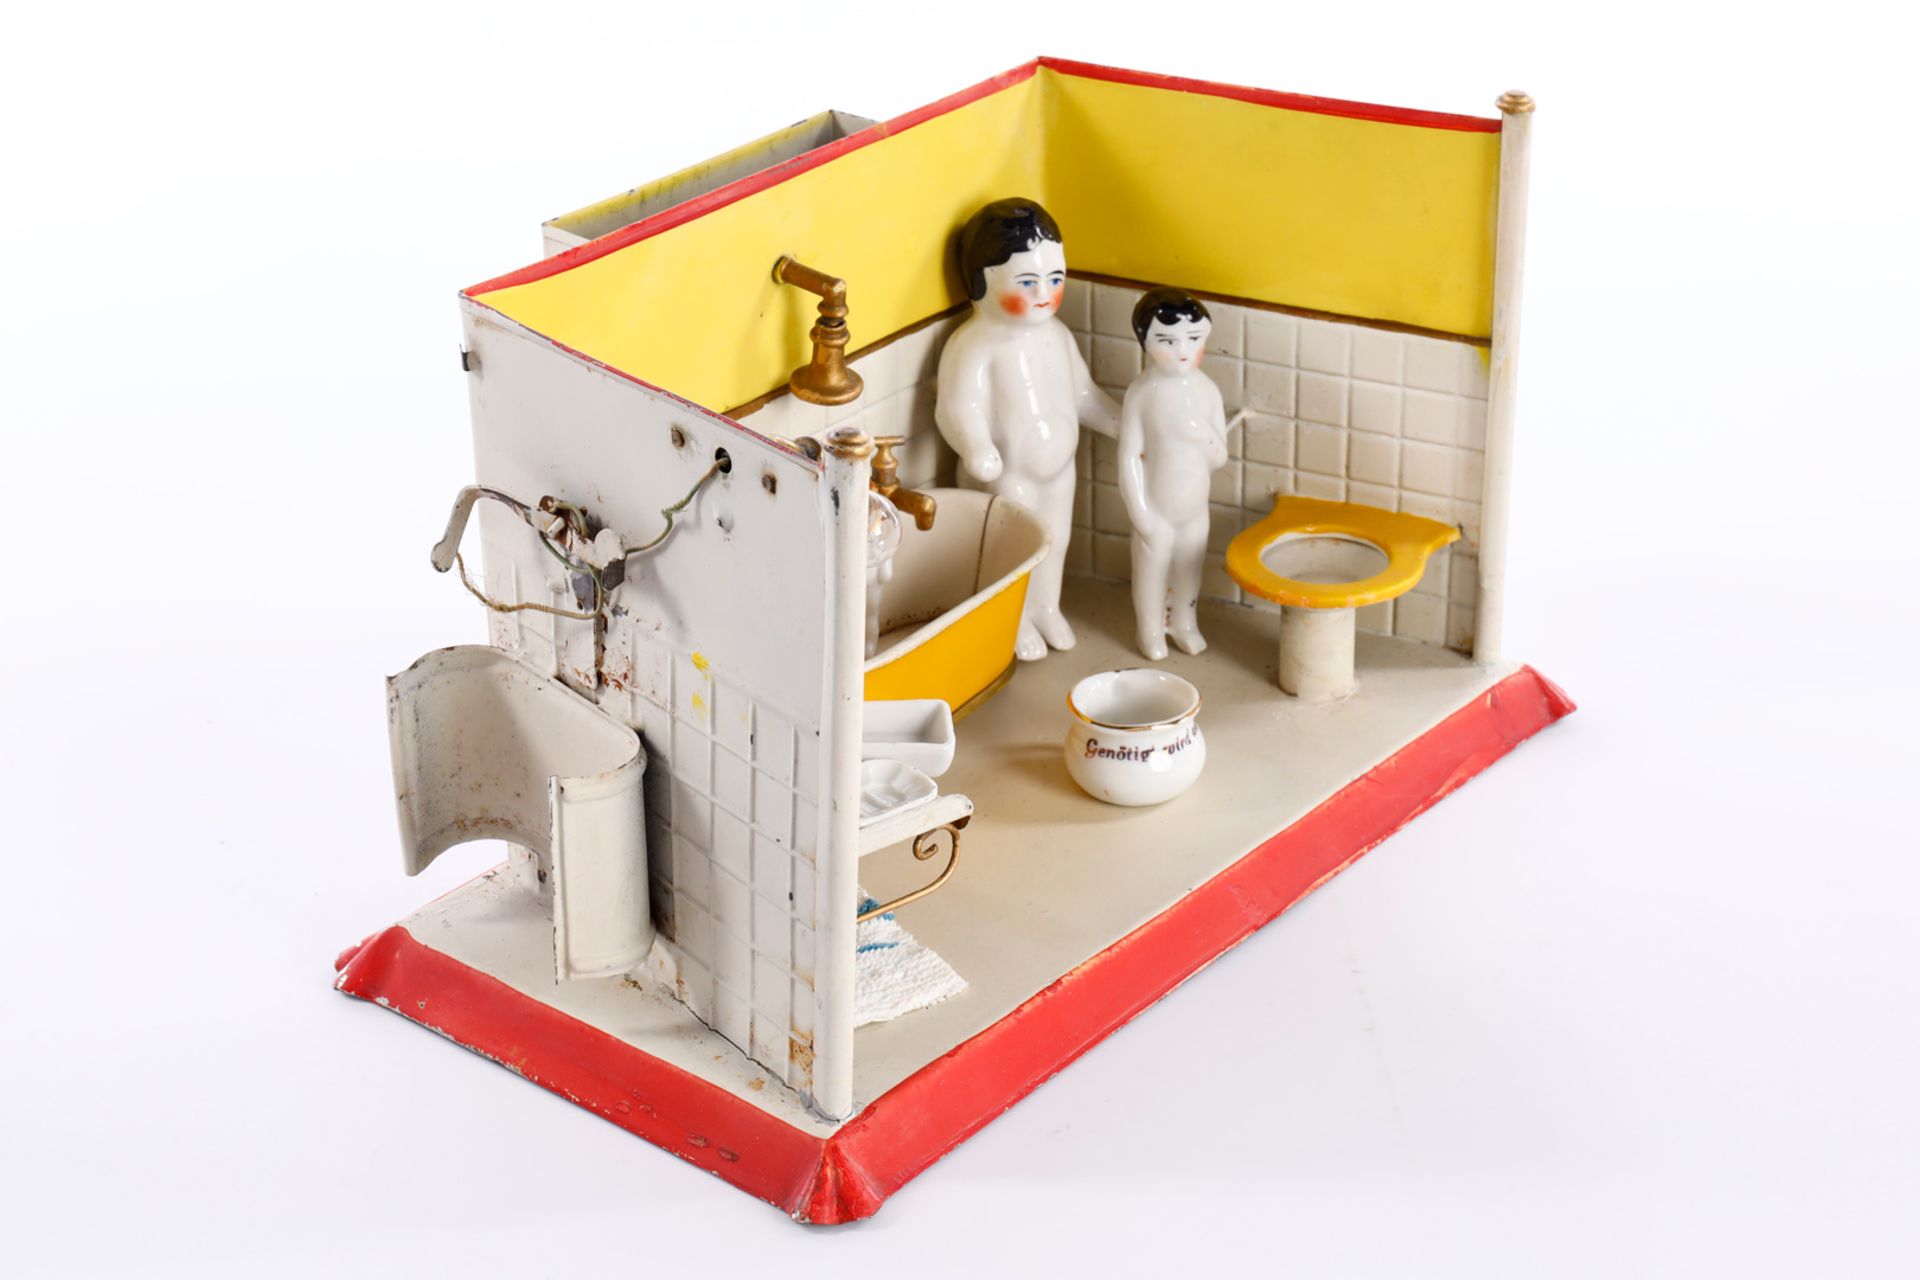 GÖSO Blech-Puppenbadezimmer, mit Badewanne, Waschbecken, Toilette, 3 Badepüppchen, 1 Kewpie und - Image 2 of 2